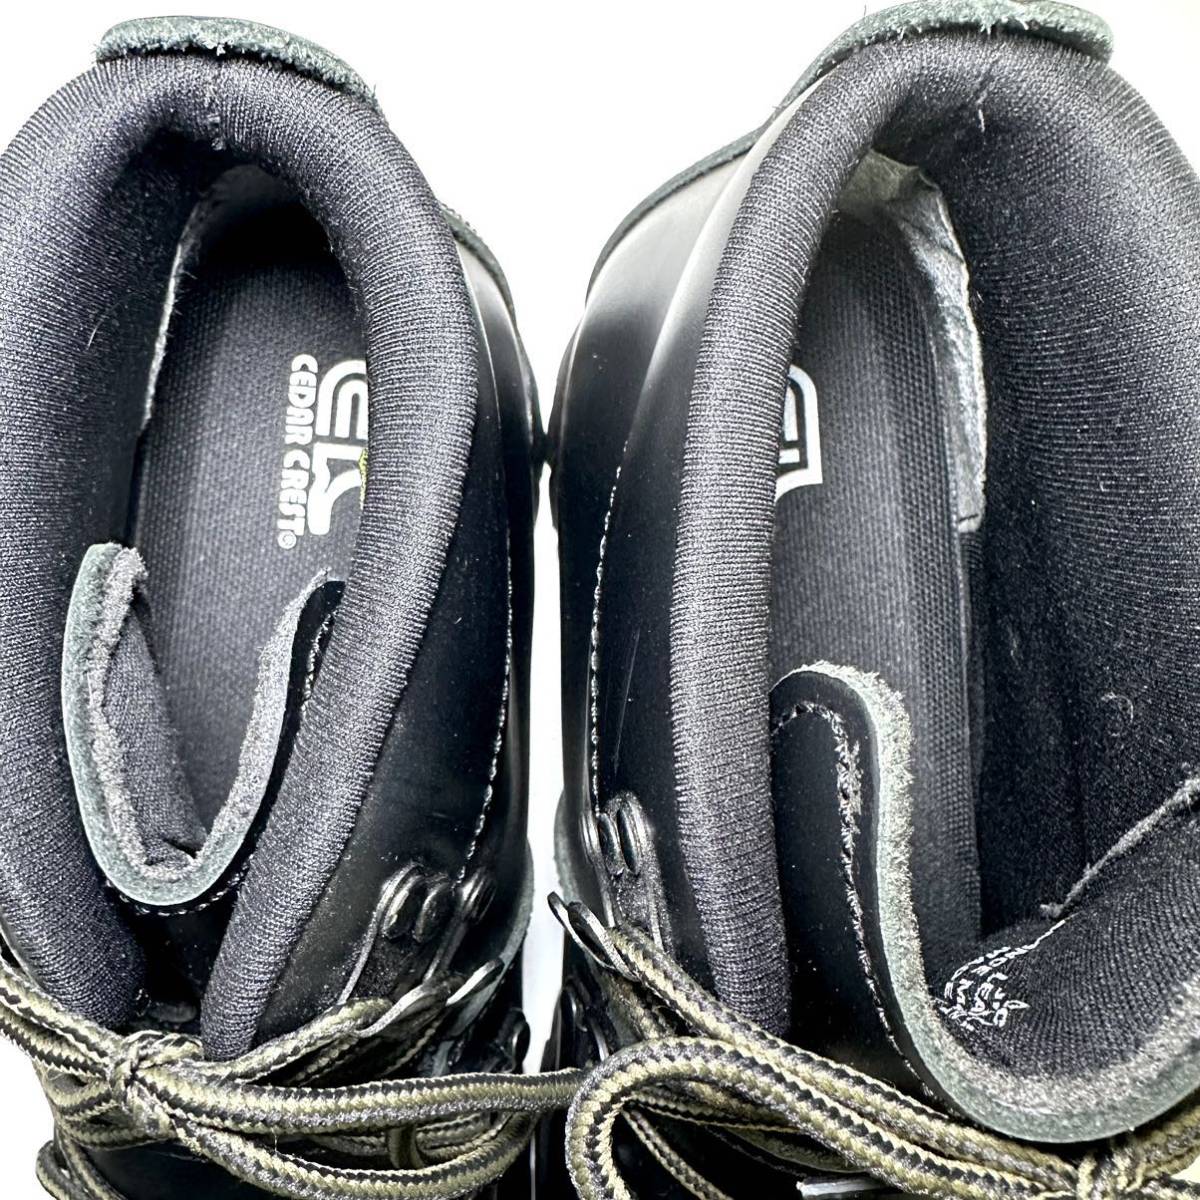 即決/試着程度/CEDAR CREST セダークレスト CC-1574 ワークブーツ US 8 26.0cm メンズ スニーカー 靴/革靴/カジュアル/ブラック/黒_画像3